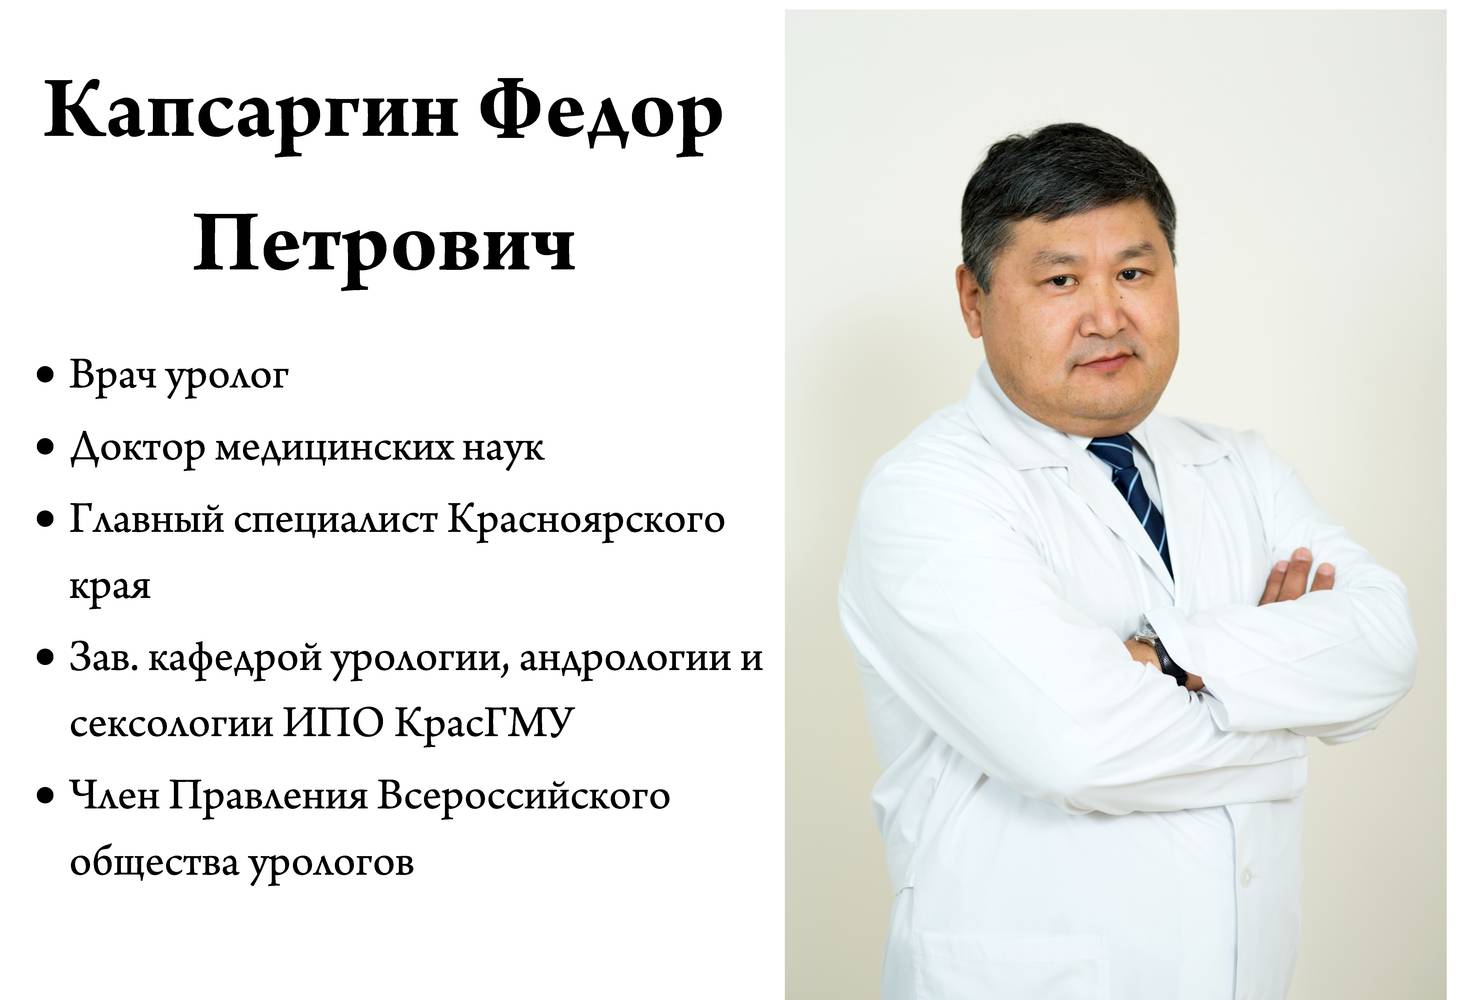 Платный врач красноярск. Профессорская клиника КРАСГМУ.